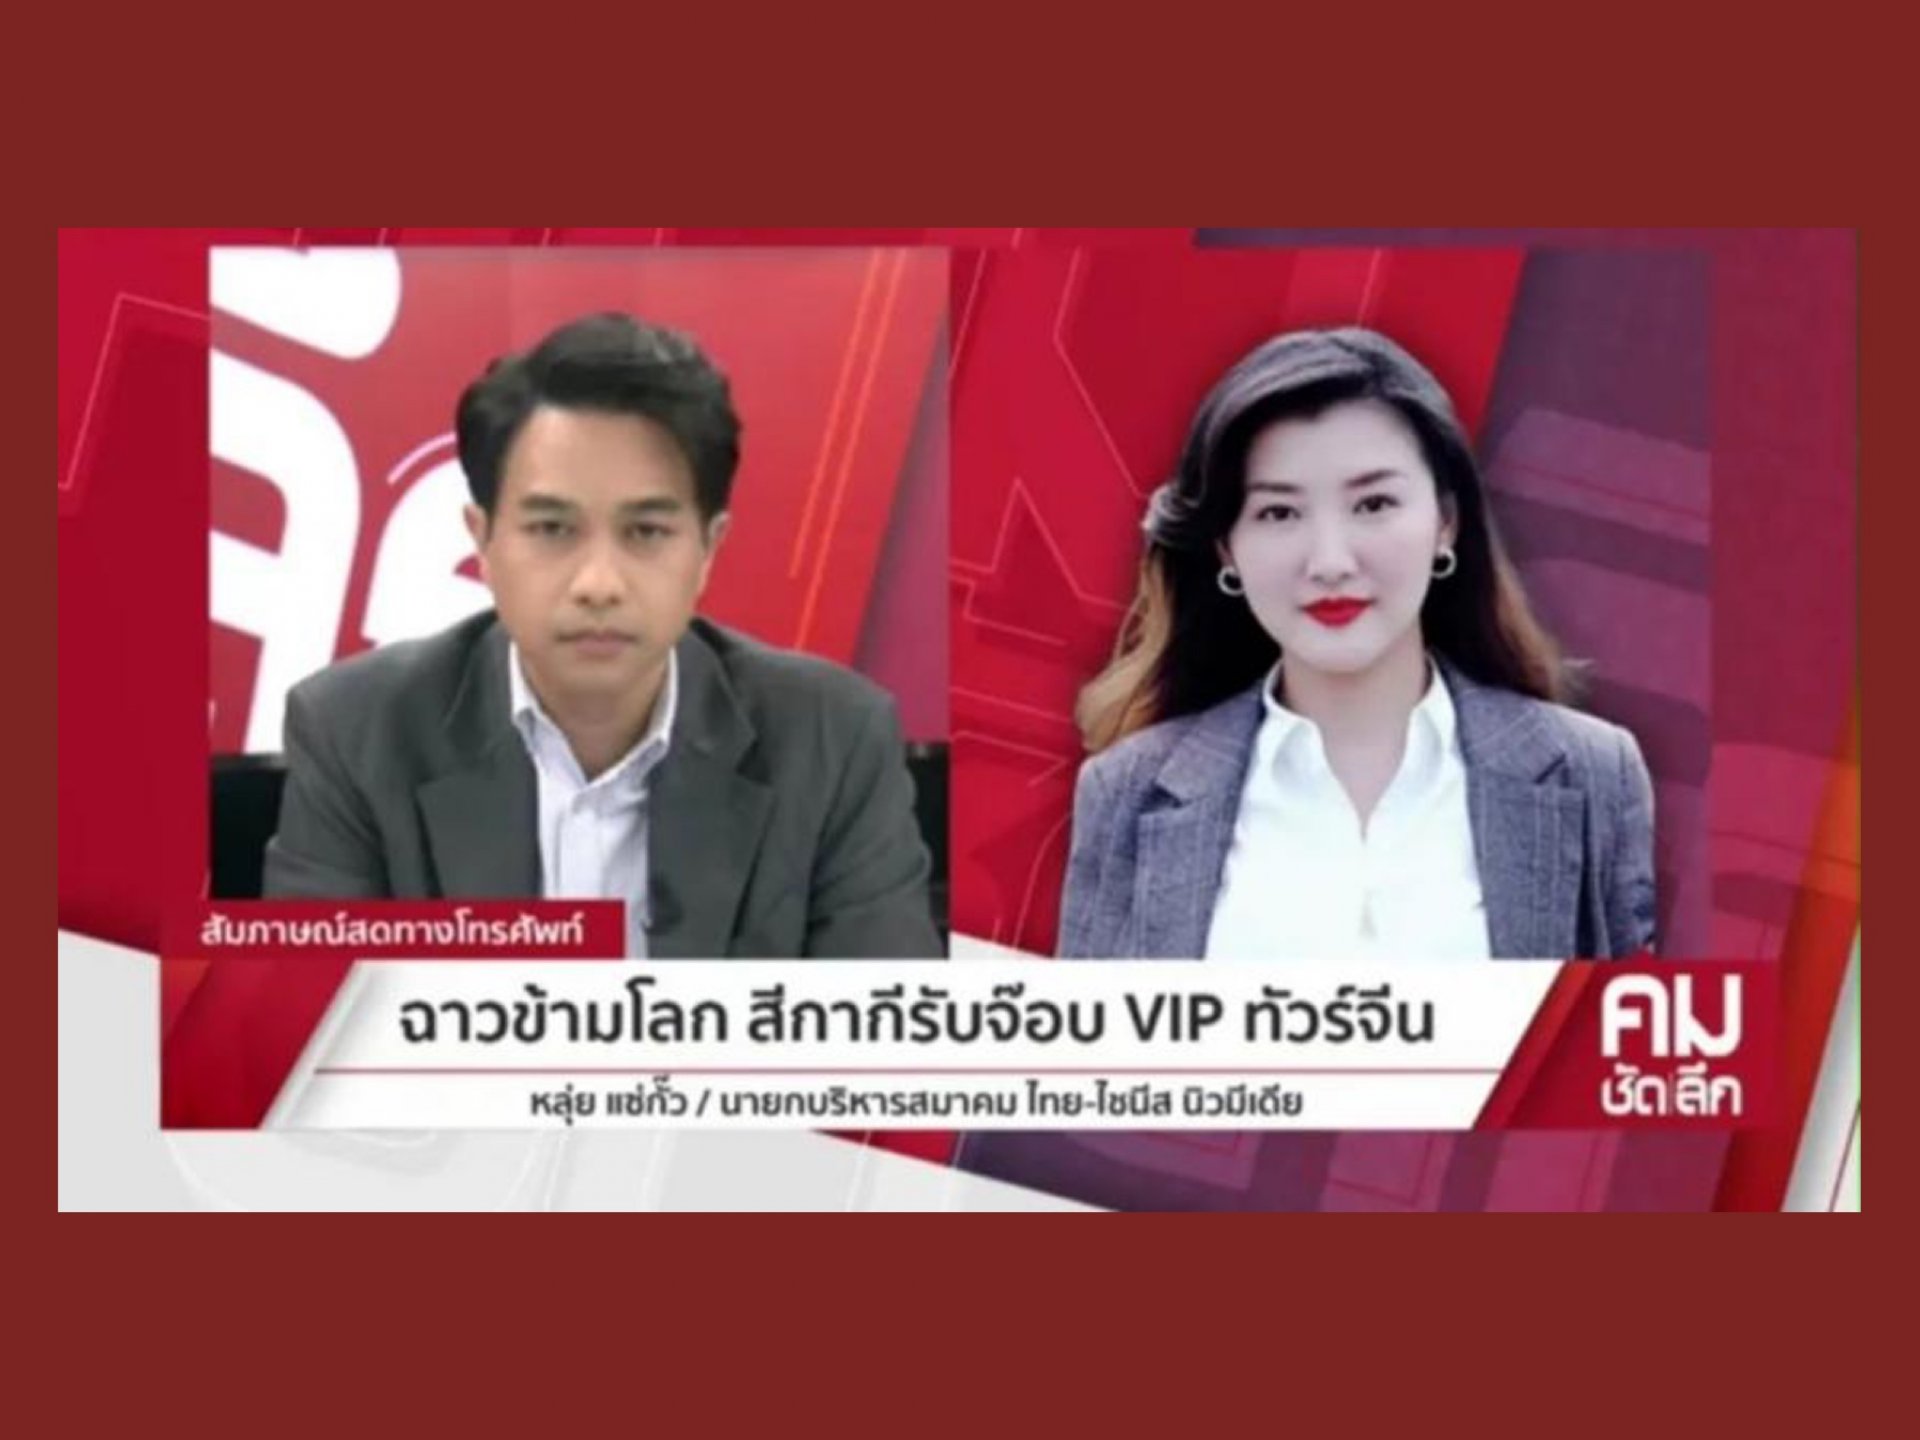 เหตุการณ์ "ตำรวจไทยรับอินฟลูเอนเซอร์ชาวจีนที่สนามบิน" สะเทือนทั้งไทยและจีน! คุณหลุ่ย แซ่กั๊ว เรียกร้องขอความเป็นธรรมกับรัฐบาลไทย